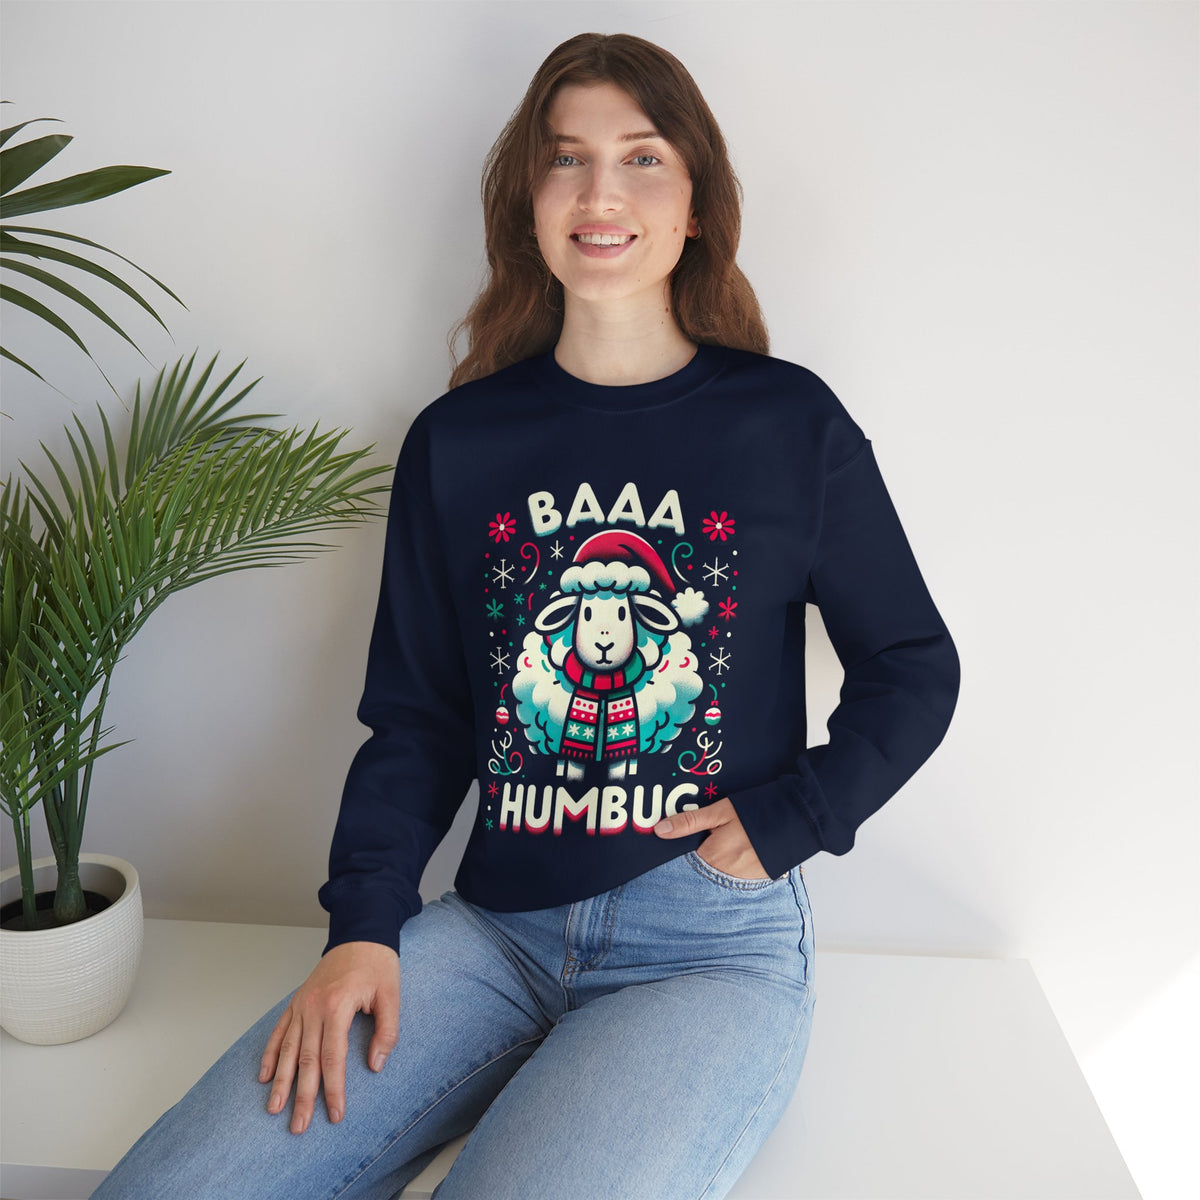 Baaa Humbug Cute Sheep Christmas Sweatshirt | Funny Bah Humbug Christmas Gift | Unisex Crewneck Sweatshirt